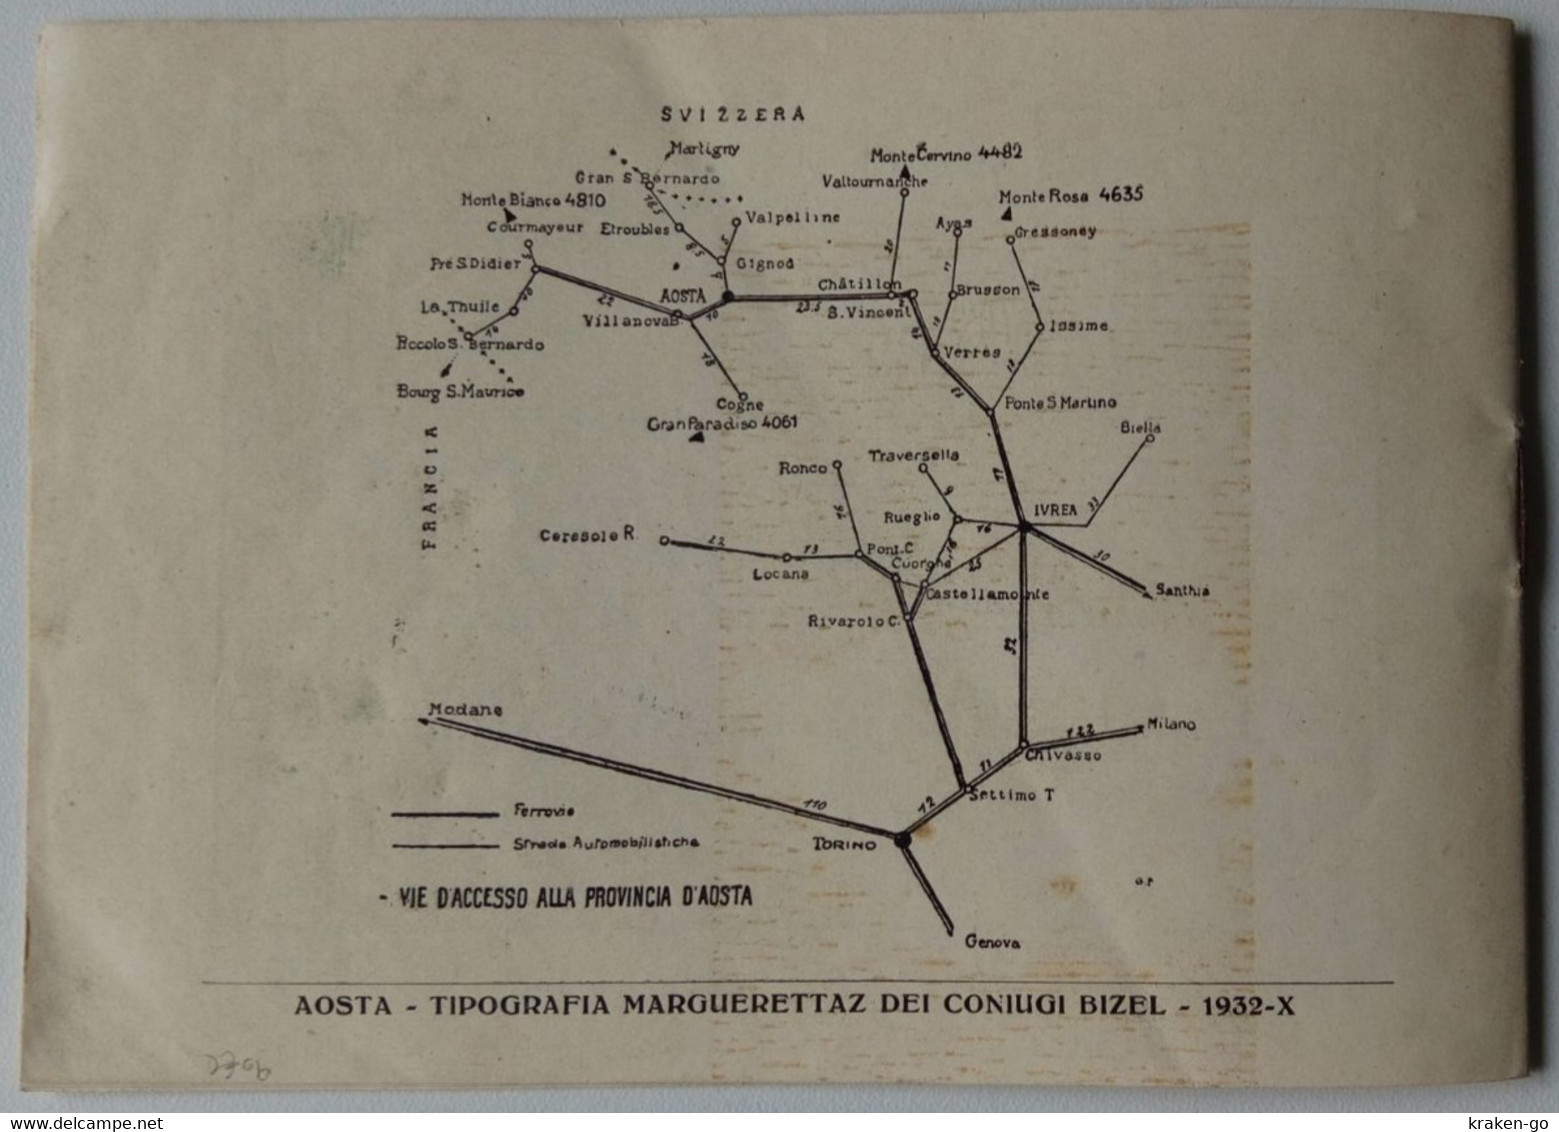 Orario Estivo Linee Ferroviarie ed Automobilistiche Valle d'Aosta e Canavese